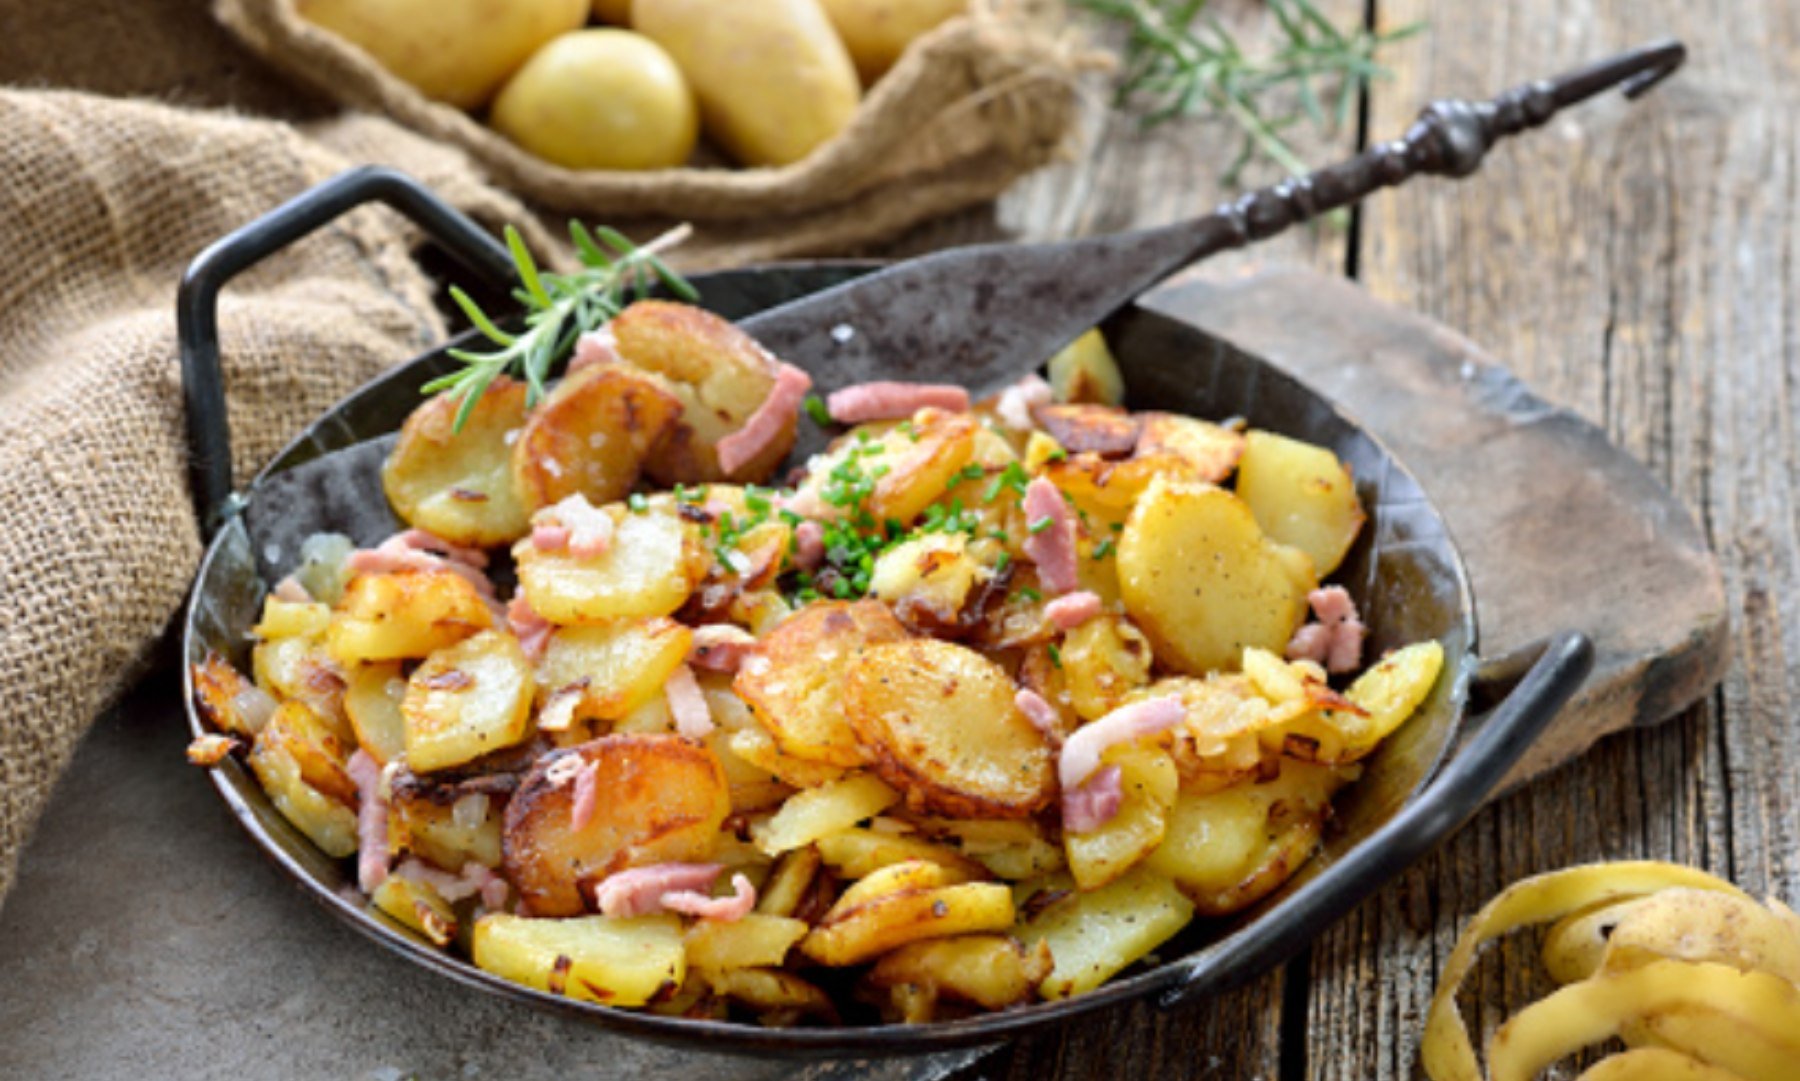 Patatas salteadas con bacon al estilo alemán